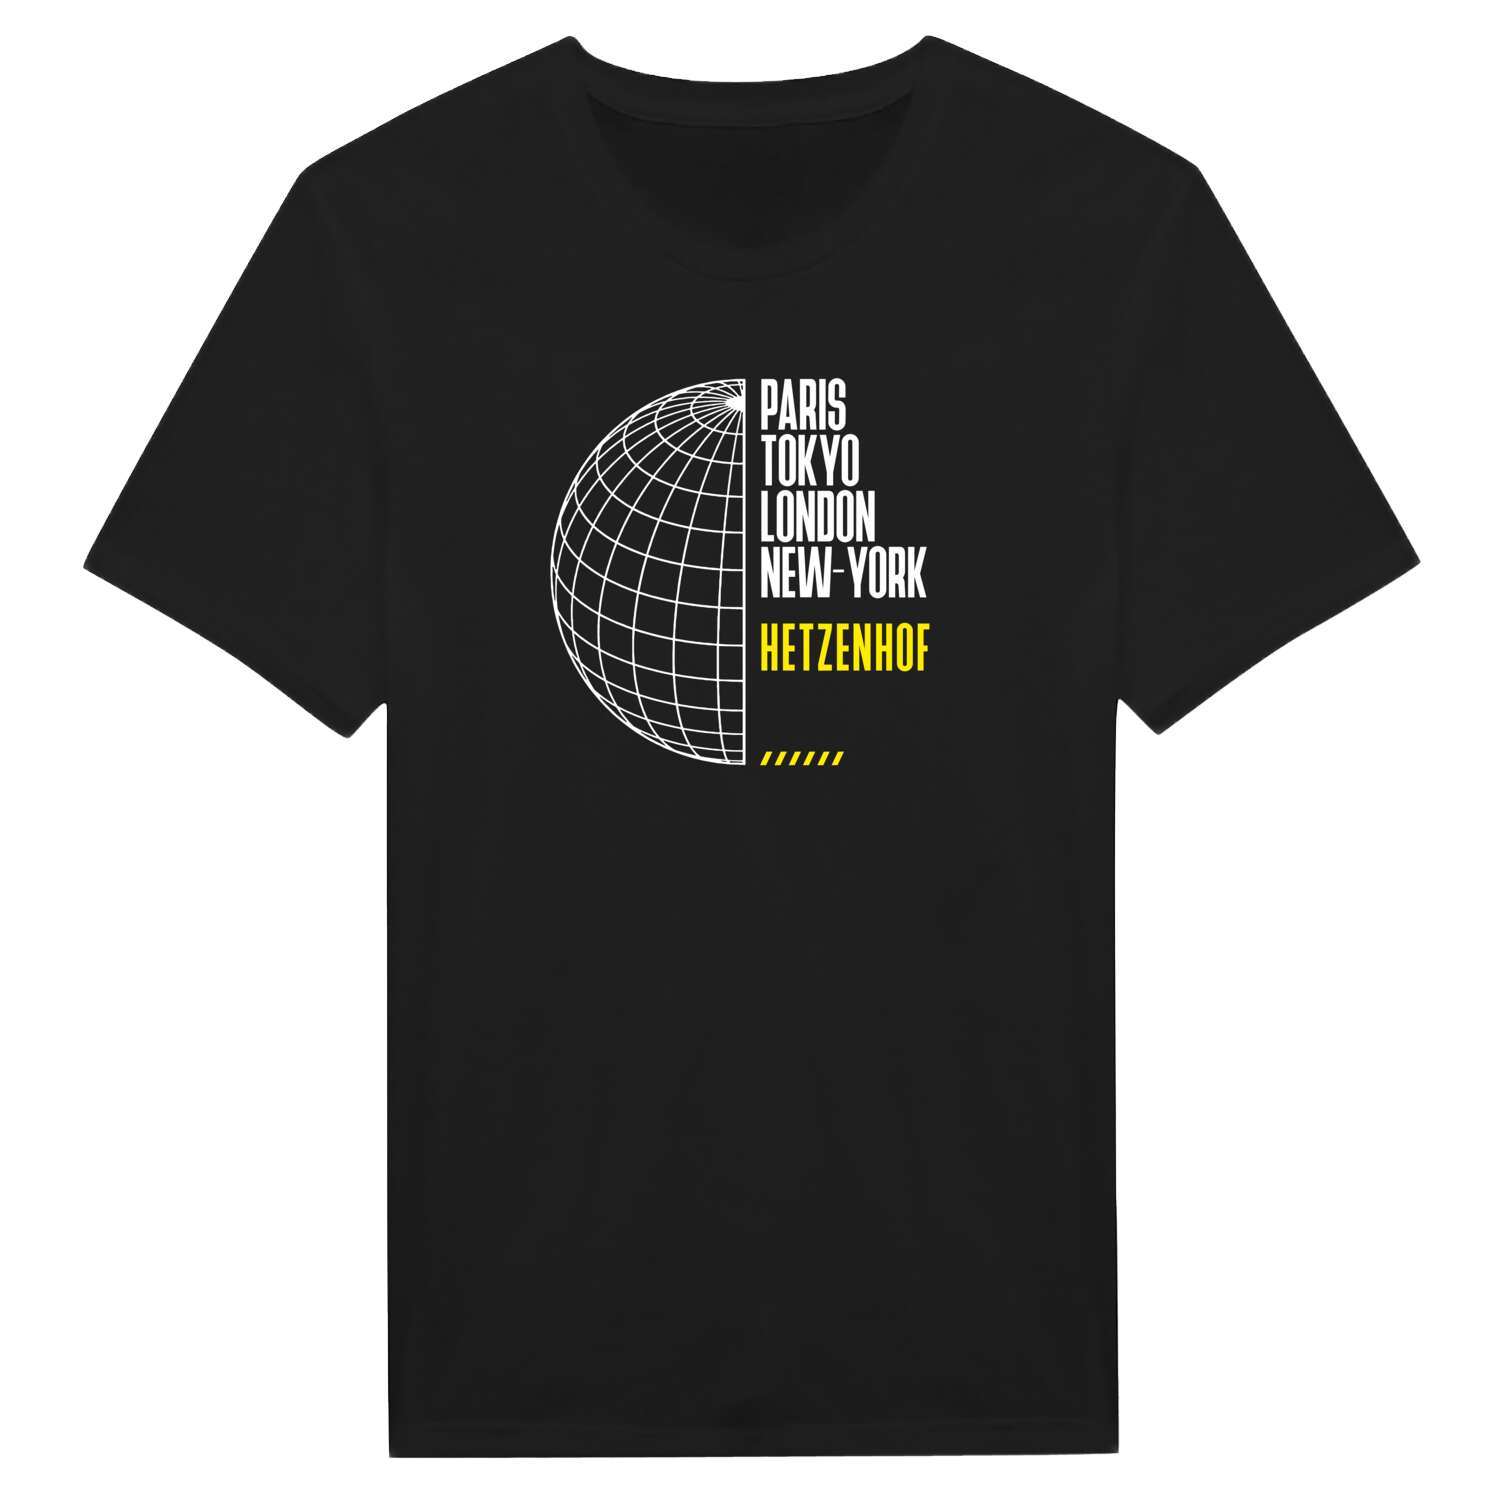 Hetzenhof T-Shirt »Paris Tokyo London«